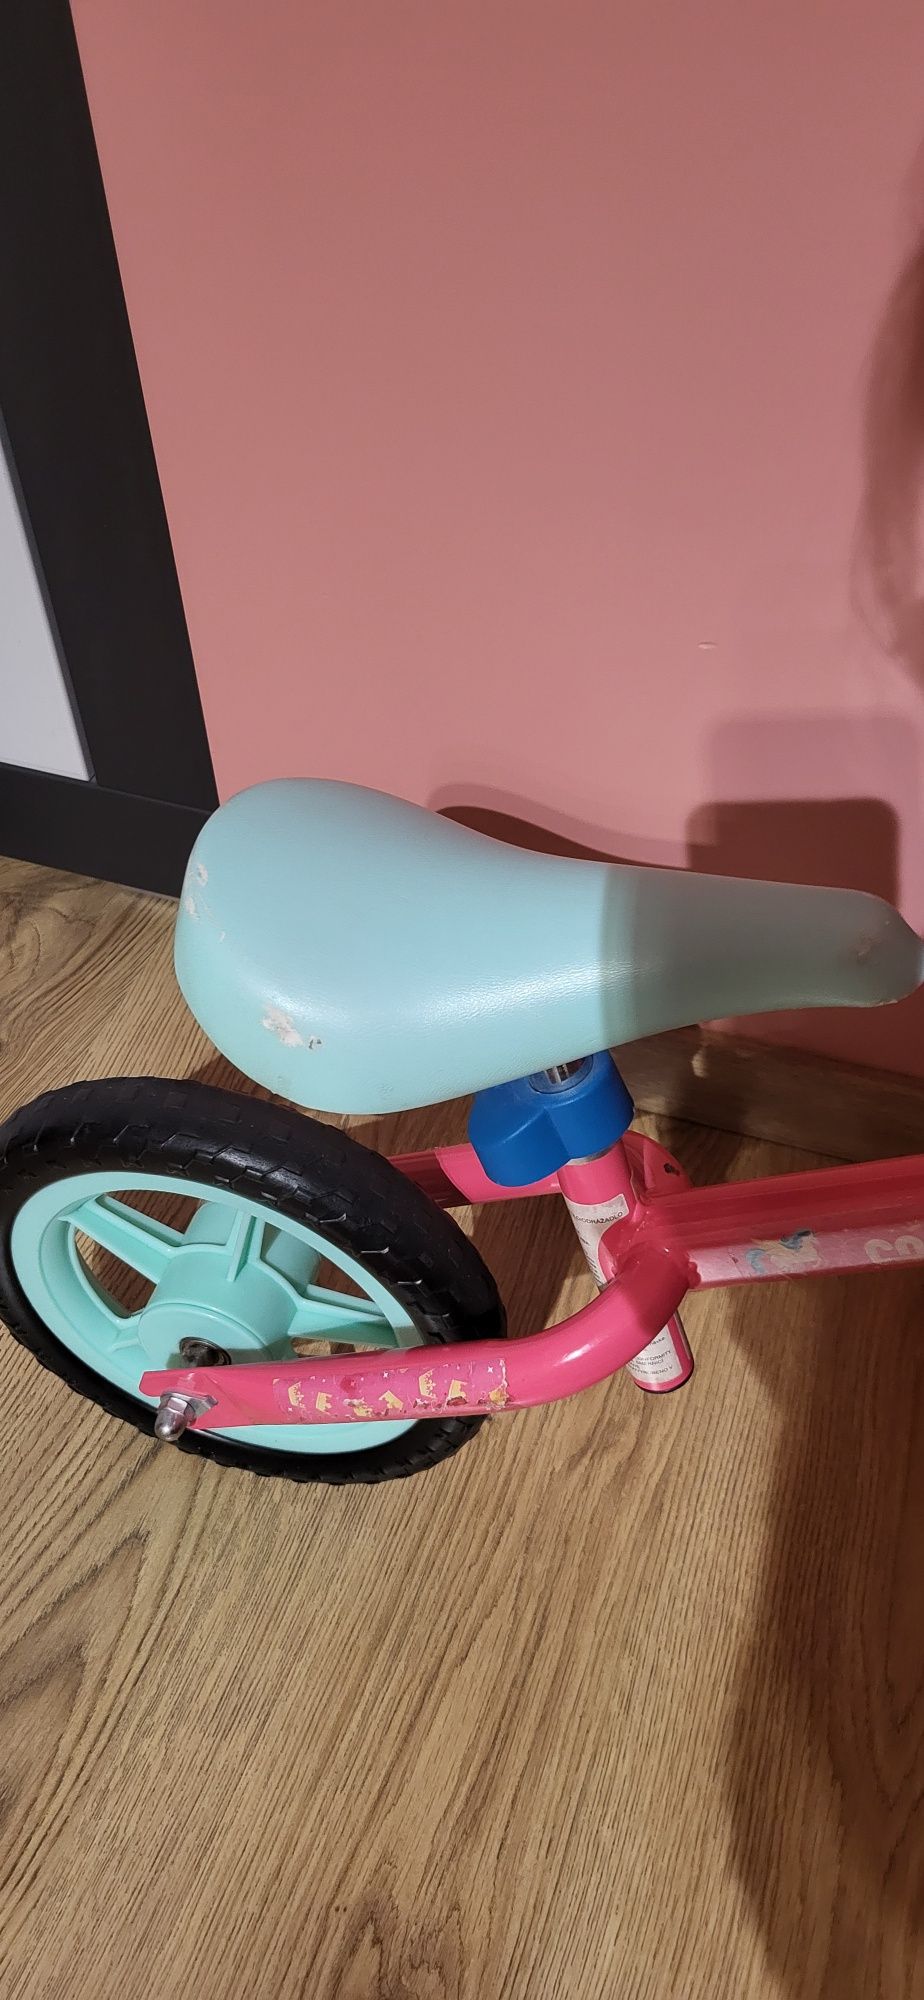 Rowerek biegowy różowo-miętowy